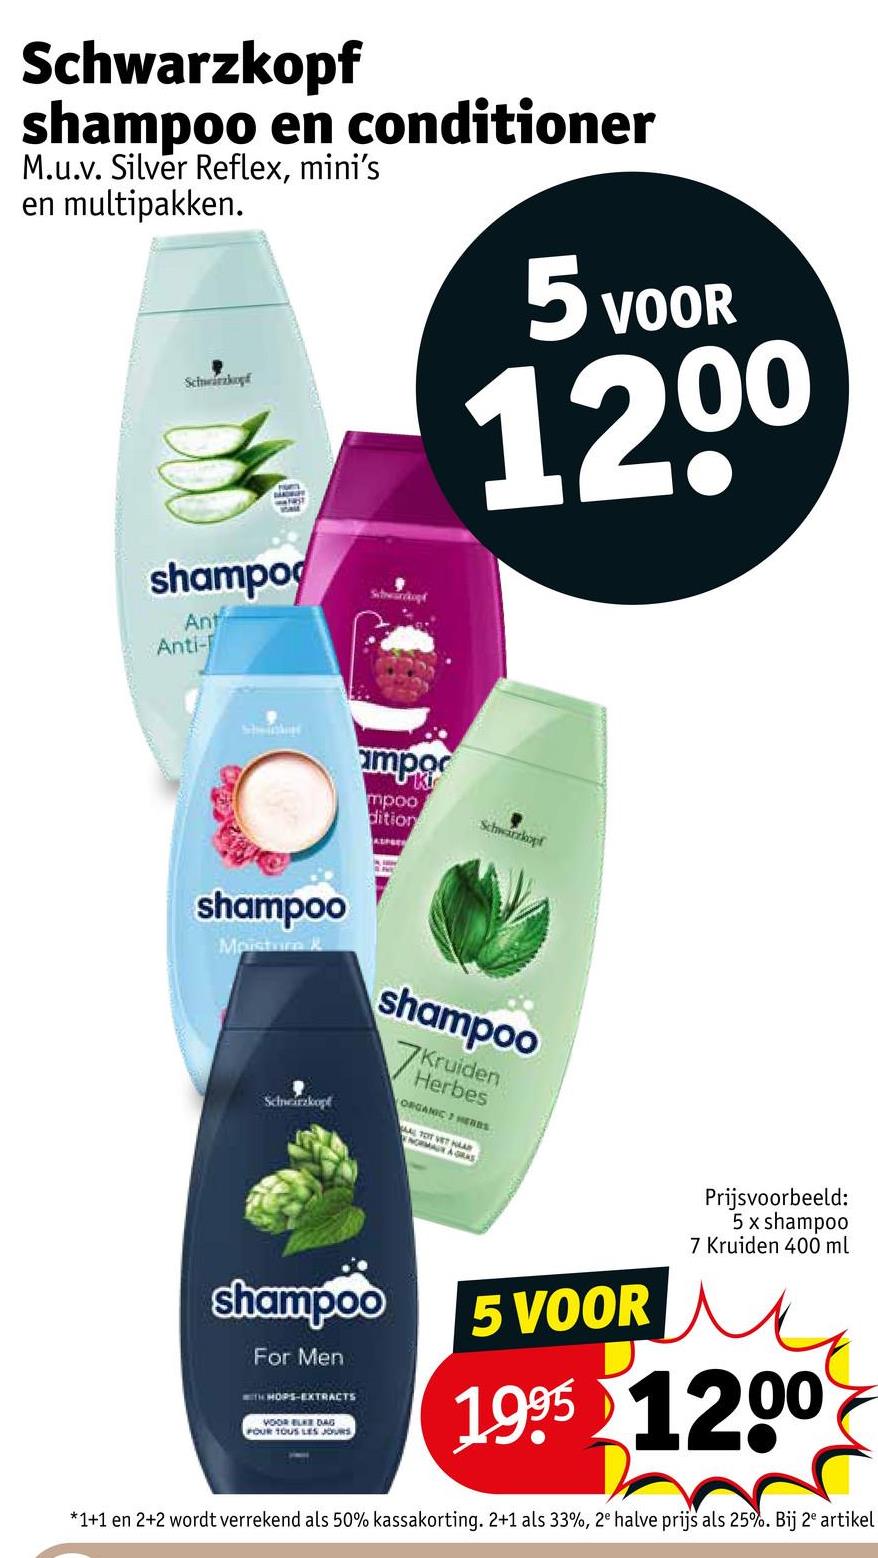 Schwarzkopf
shampoo en conditioner
M.u.v. Silver Reflex, mini's
en multipakken.
Schwarzkopf
5 VOOR
1200
shampo
Ant
Anti-
Subwürckopt
mpo
mpoo
dition
ALPSE
Schwarzkopf
shampoo
Moisture &
Schneirzkopf
shampoo
7K
Kruiden
Herbes
ORGANIC HERns
AL TOT VET HAAR
NORMAN A GRAS
shampoo
For Men
WITH HOPS-EXTRACTS
VOOR ELKE DAG
POUR TOUS LES JOURS
5 VOOR
Prijsvoorbeeld:
5 x shampoo
7 Kruiden 400 ml
1995 1200
*1+1 en 2+2 wordt verrekend als 50% kassakorting. 2+1 als 33%, 2e halve prijs als 25%. Bij 2 artikel